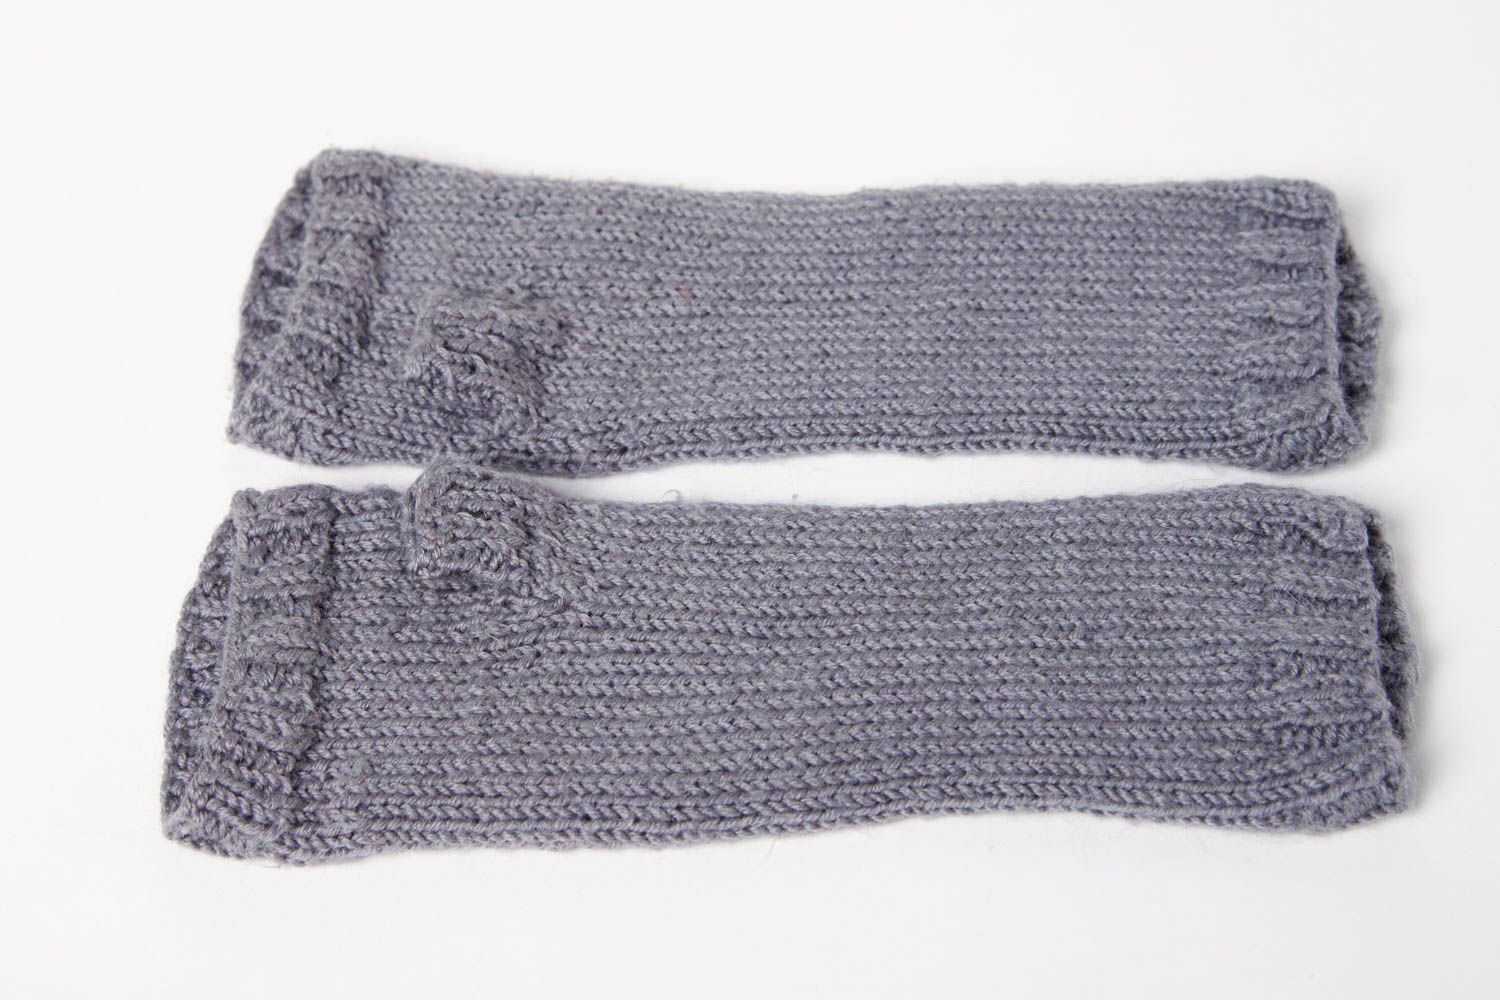 Handmade knitted mittens winter mittens winter accessories designer mittens photo 9